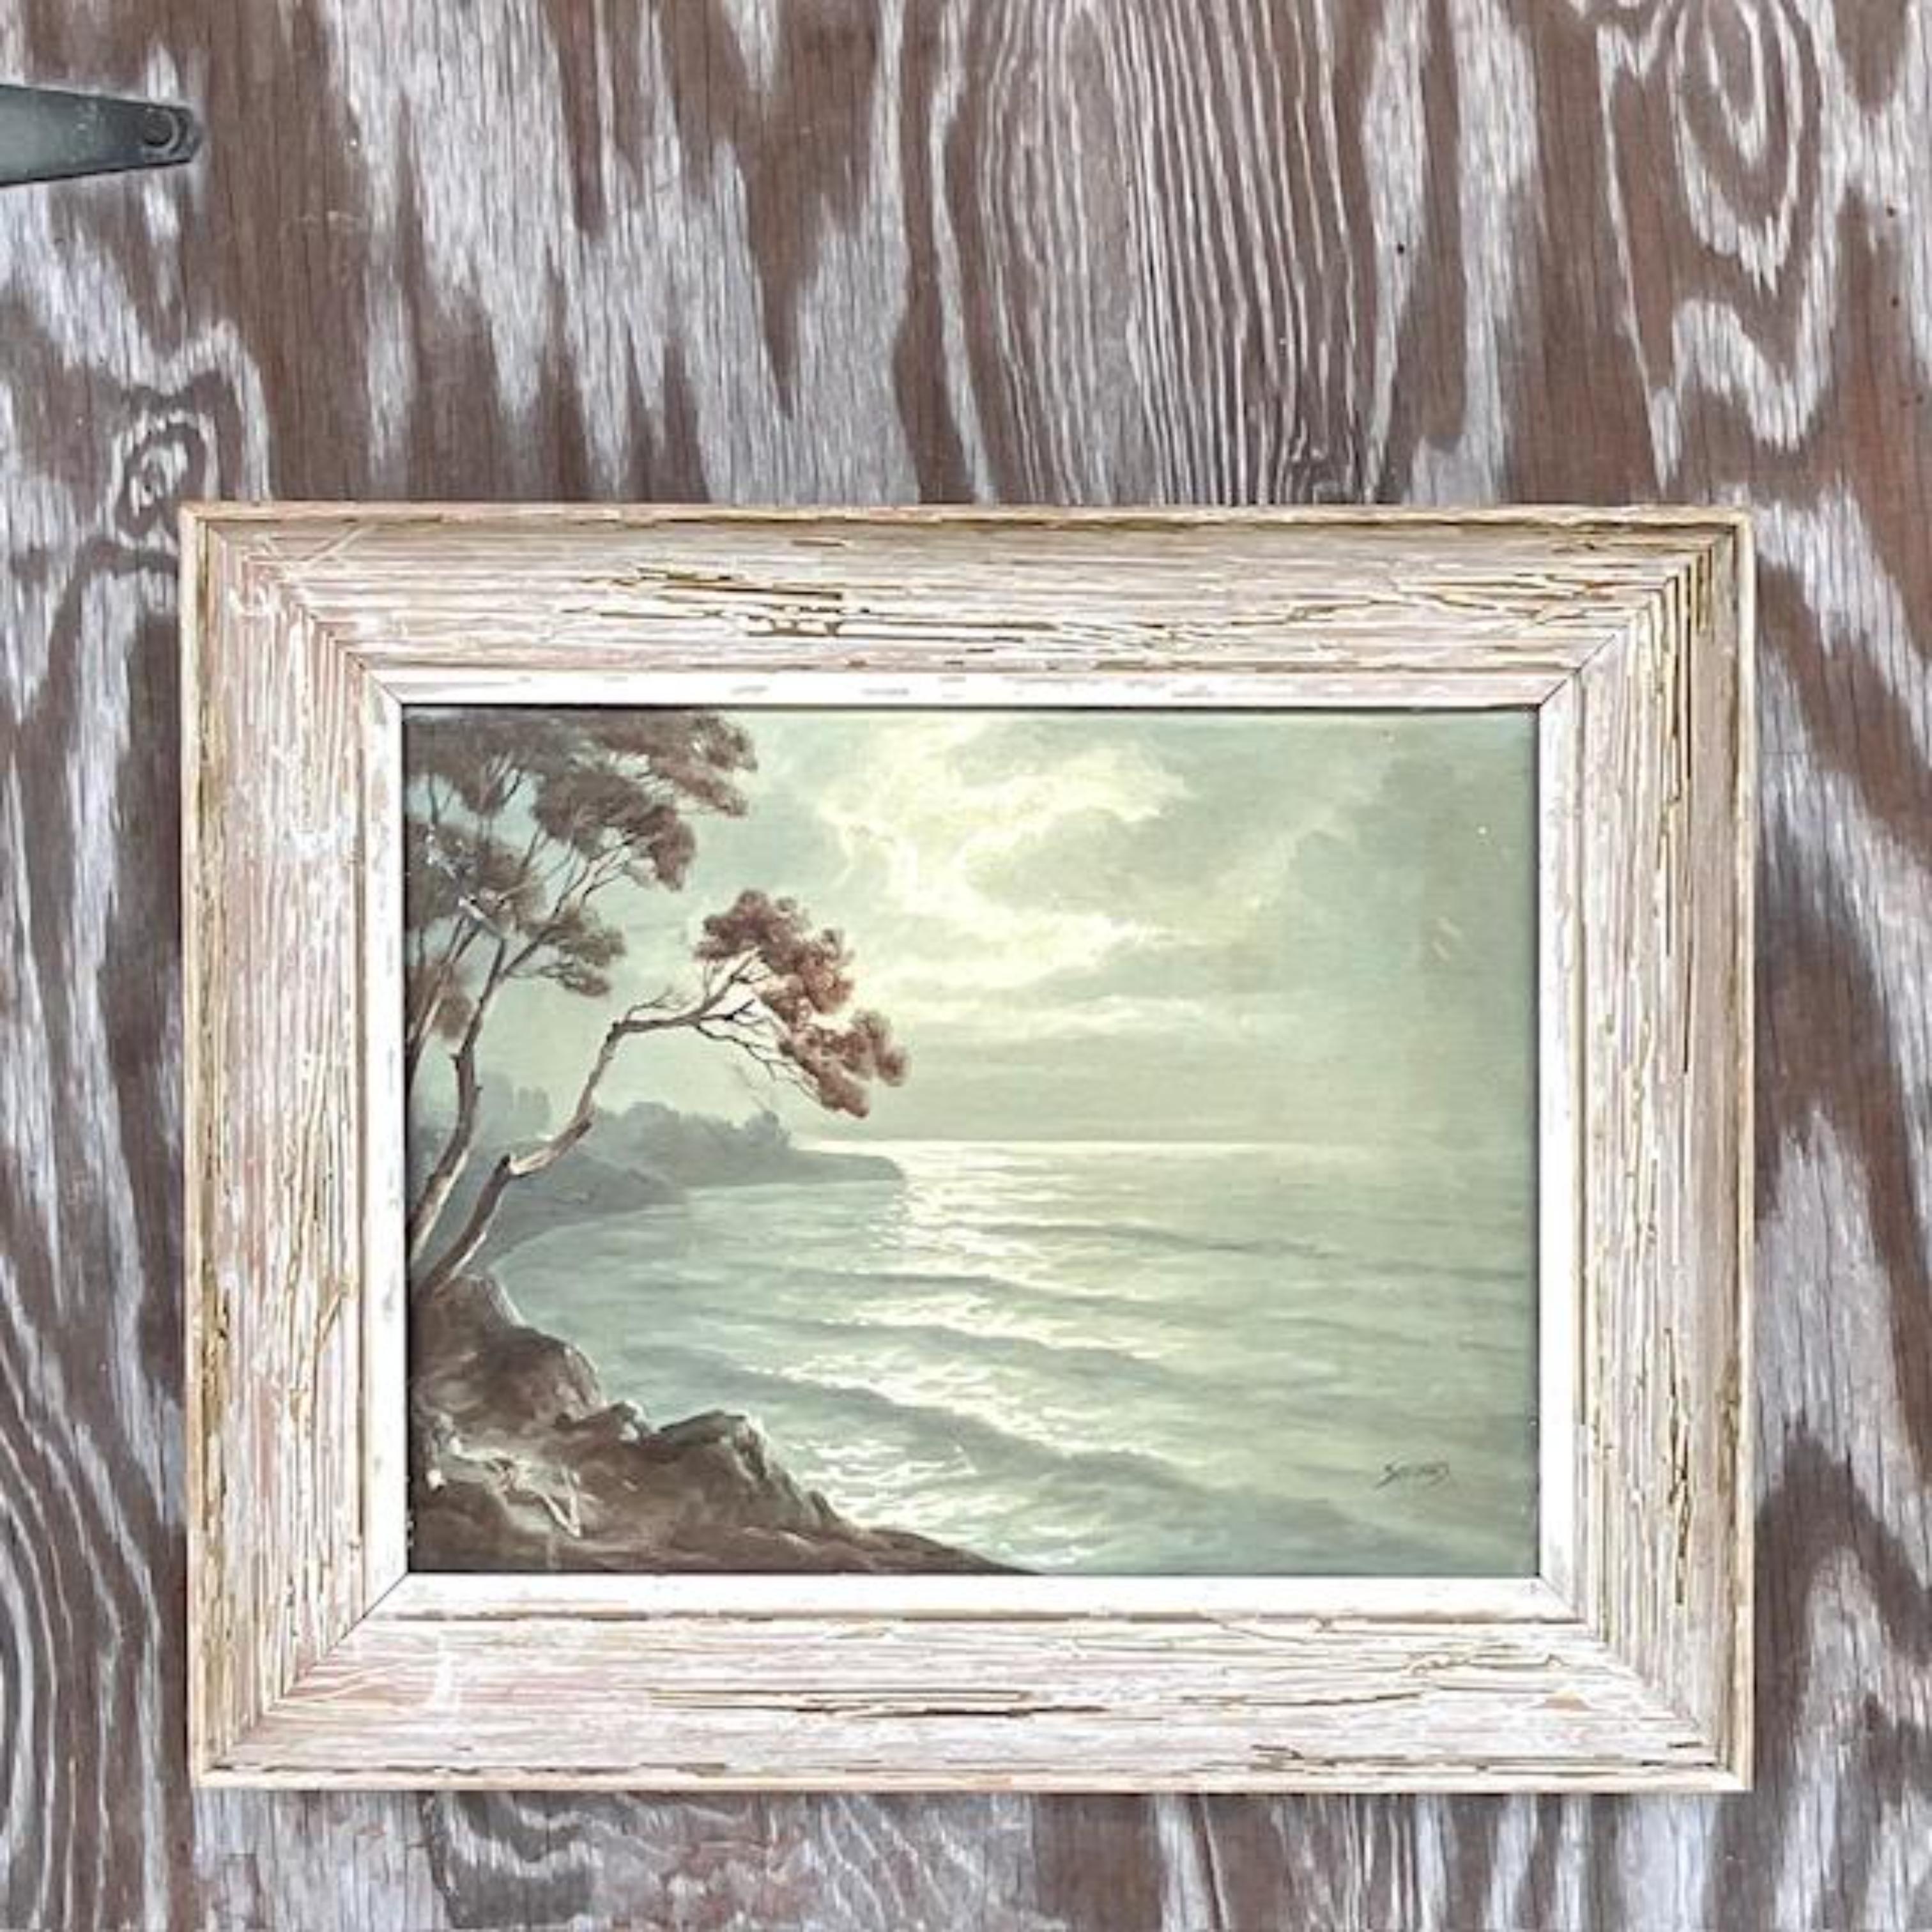 Une fabuleuse huile sur toile originale de la côte. Composition monochromatique chic d'un paysage marin. Une attention particulière est portée aux détails. Superbe cadre d'époque en chêne cérusé. Acquis d'une propriété de Palm Beach.